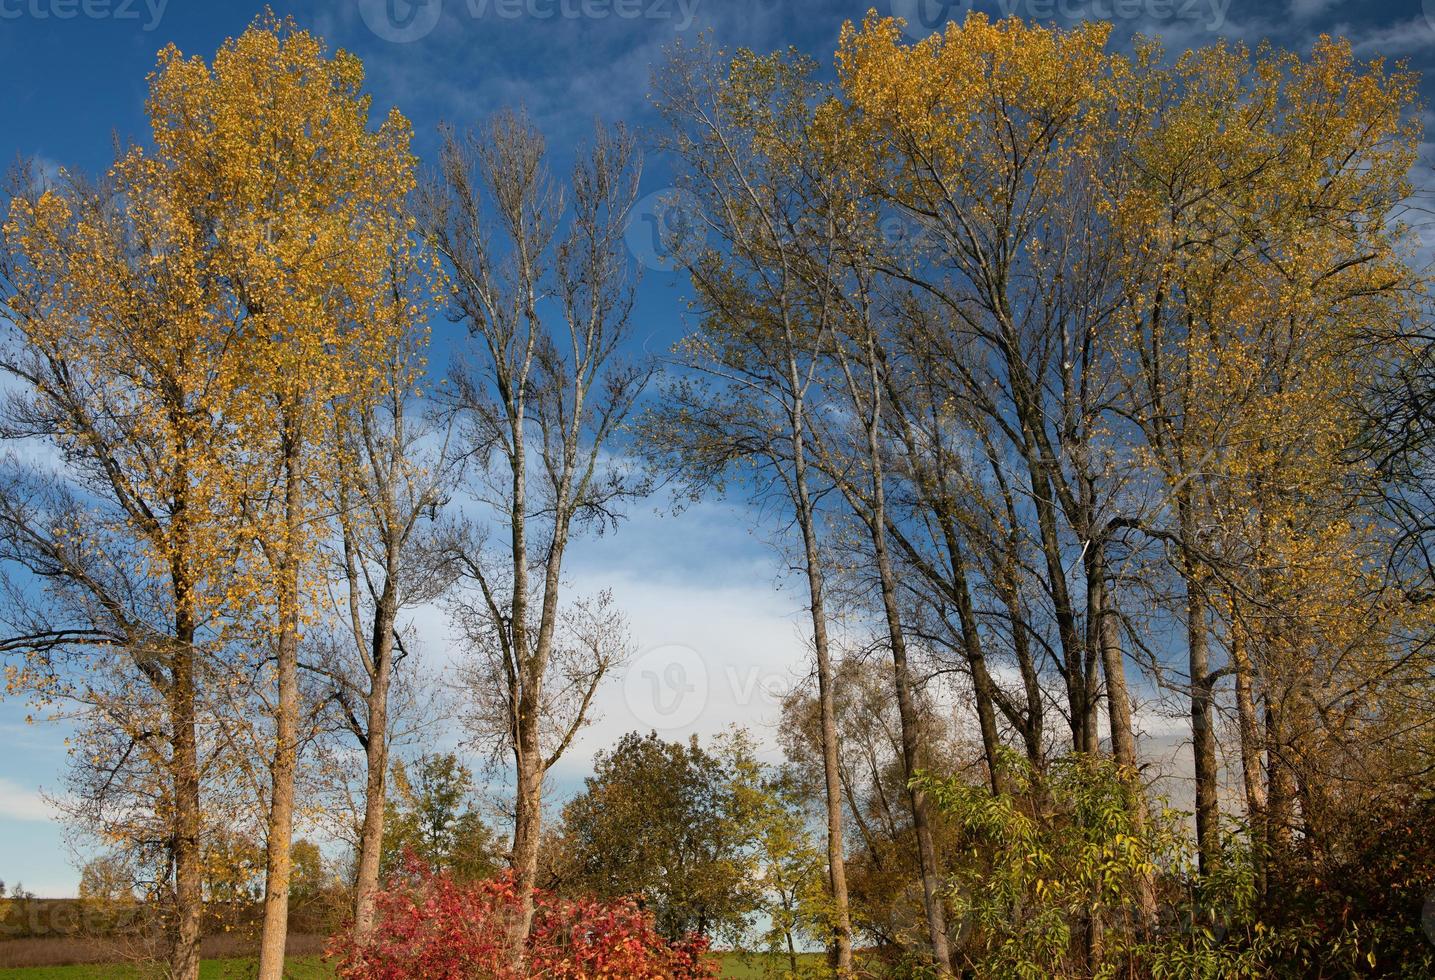 toma otoñal de abedules cuyas hojas se han vuelto amarillas. en el fondo el cielo azul con nubes blancas. otros árboles están desnudos. la imagen está en formato apaisado. foto